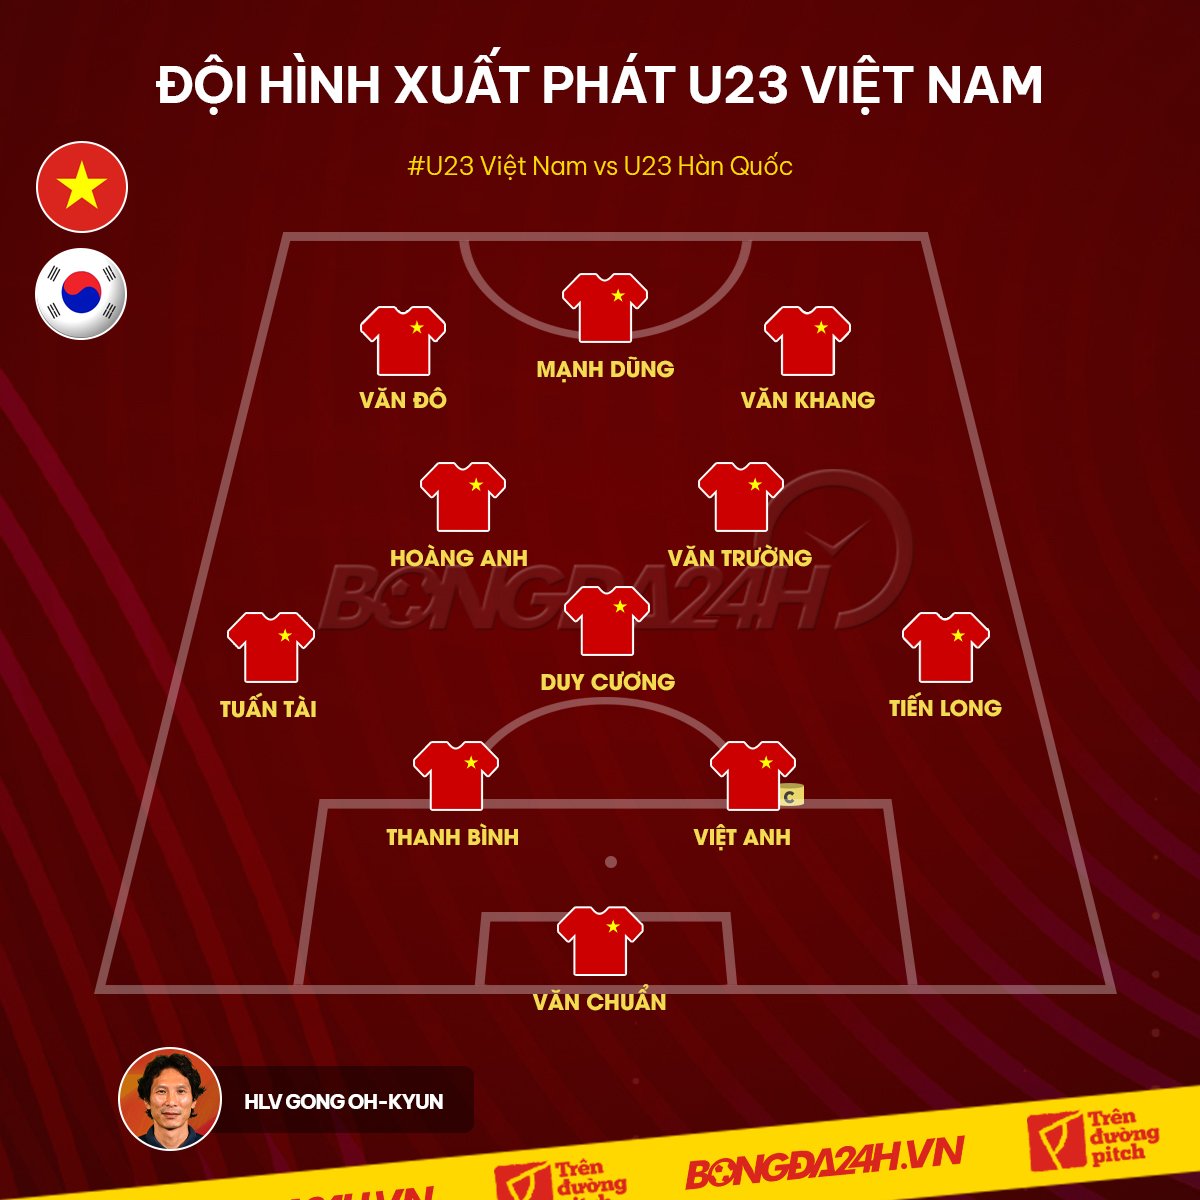 Danh sách xuất phát của U23 Việt Nam trước Hàn Quốc